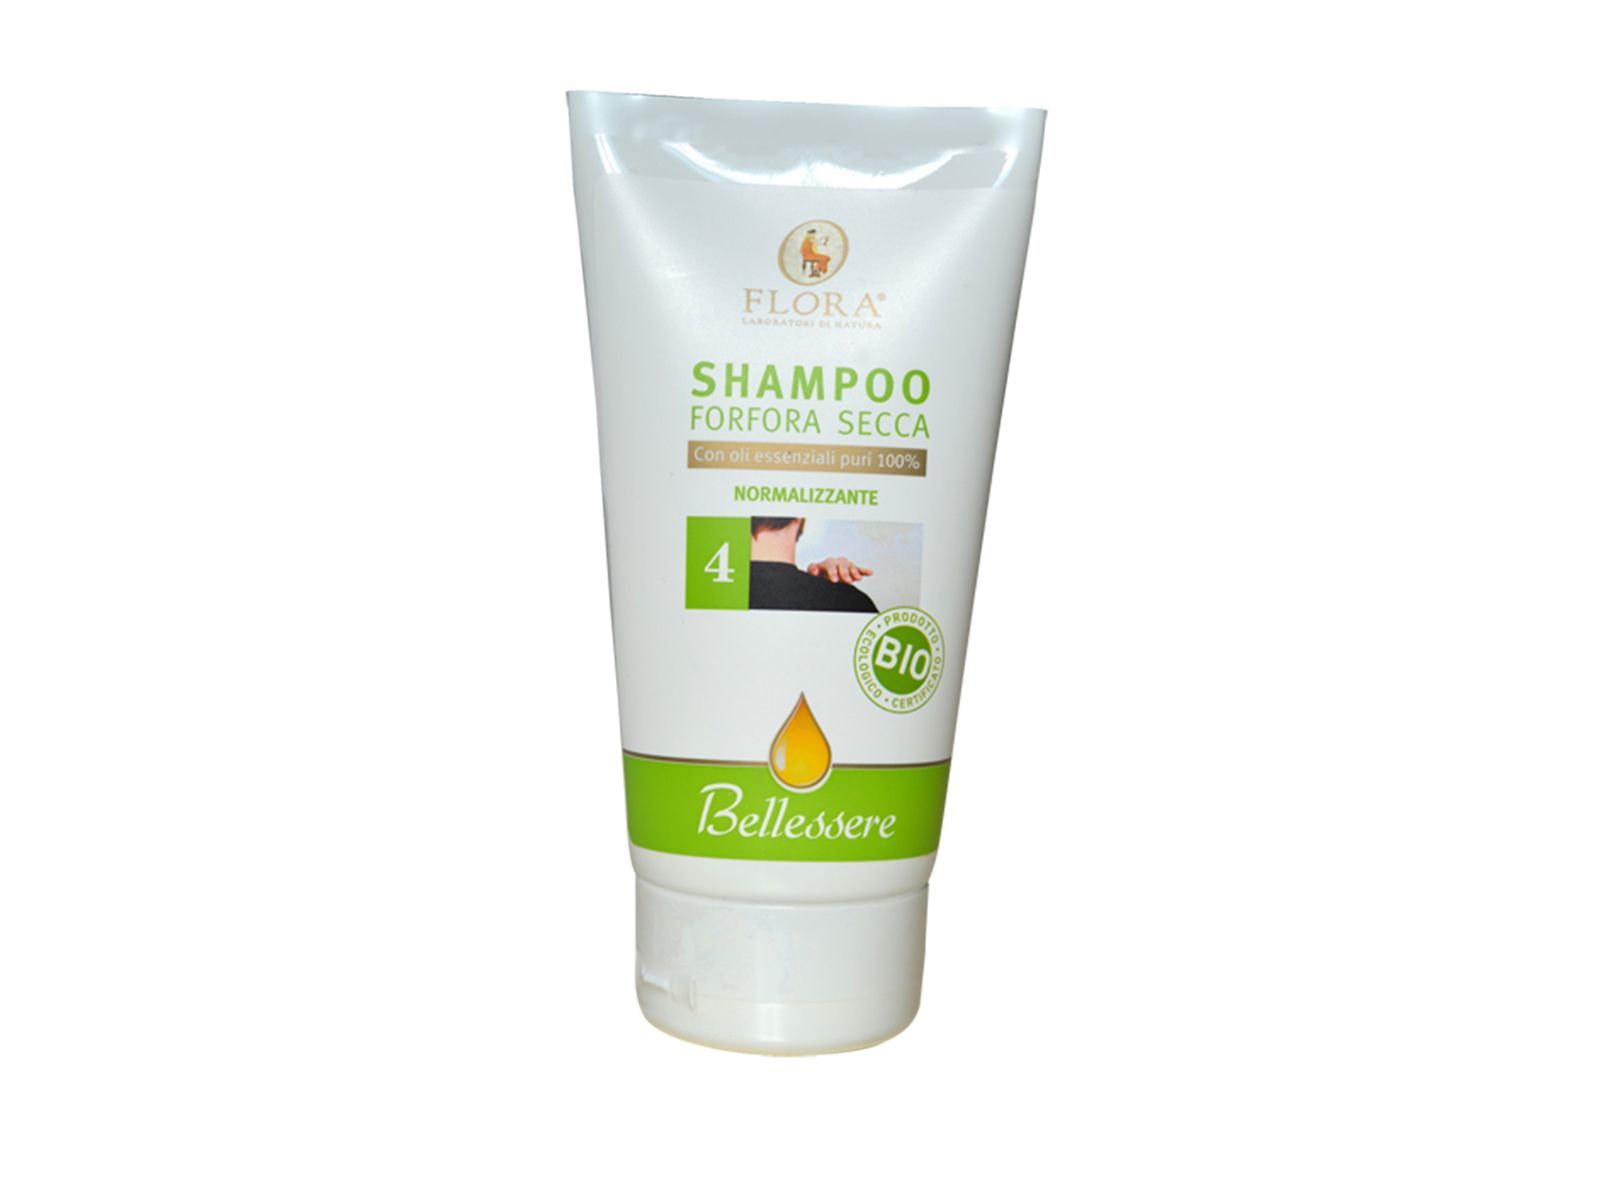 Shampoo forfora secca